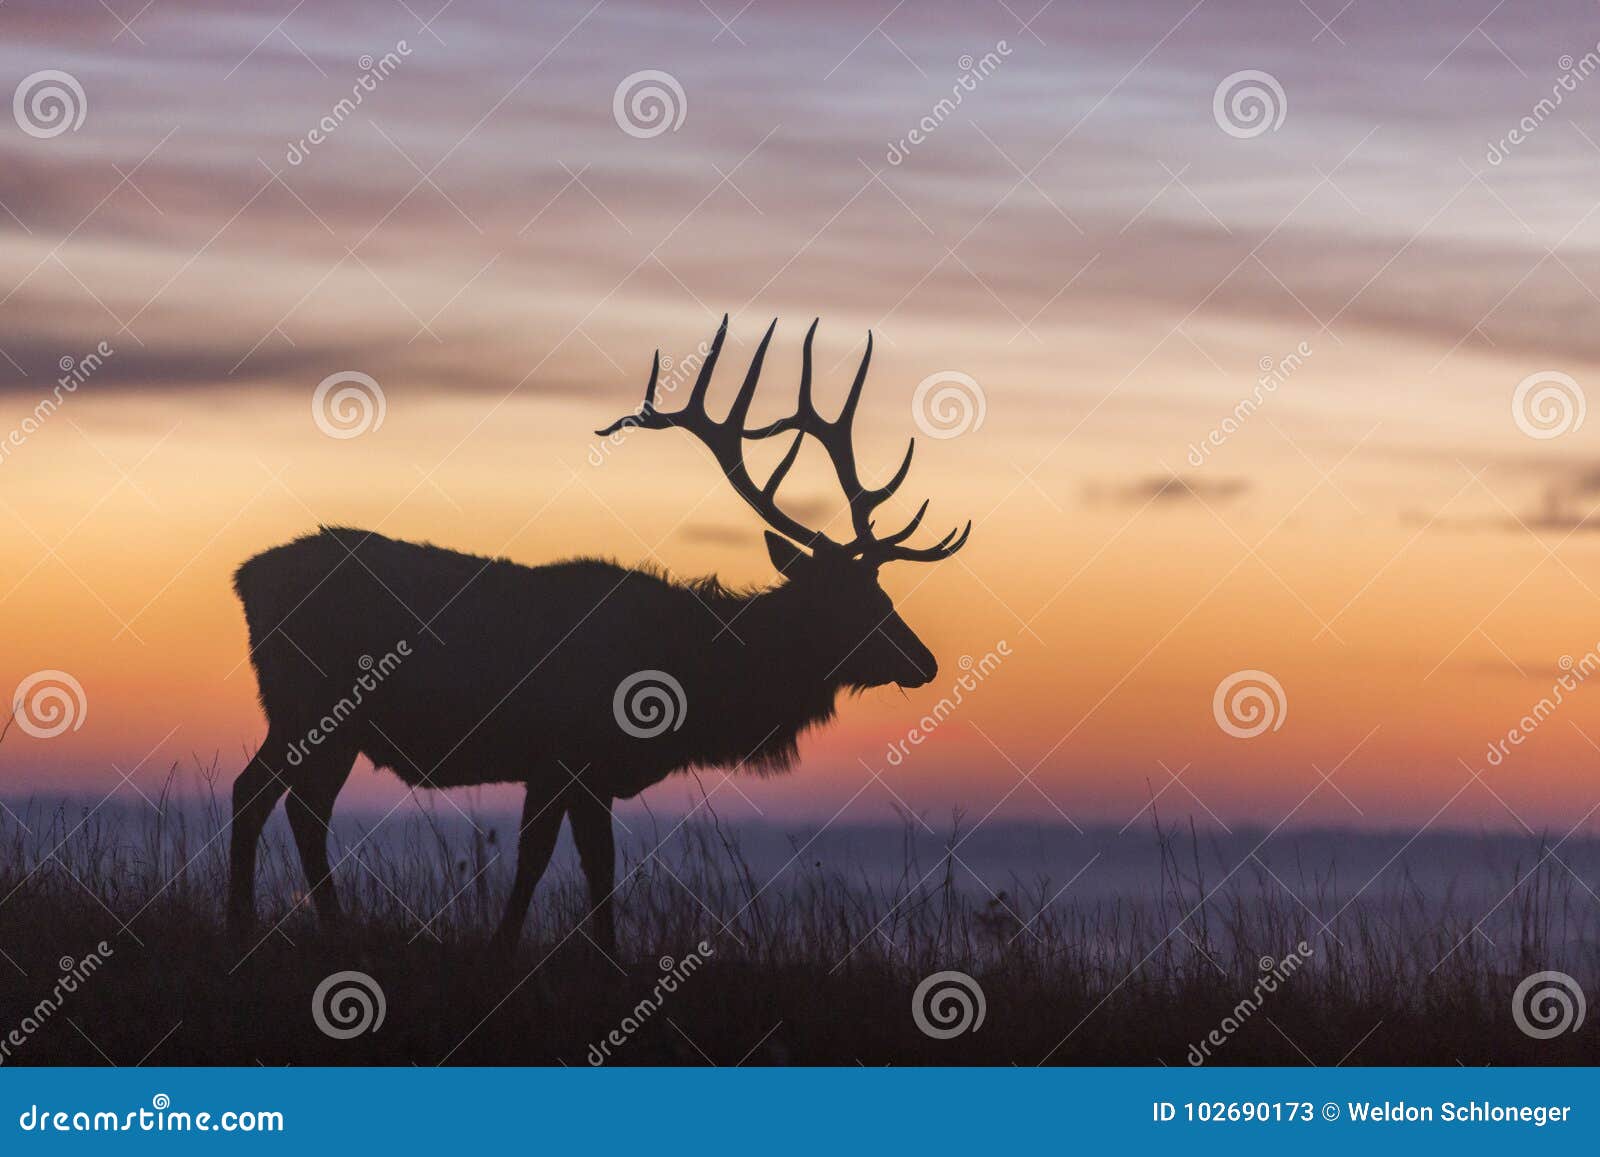 elk silhouette at sunrise